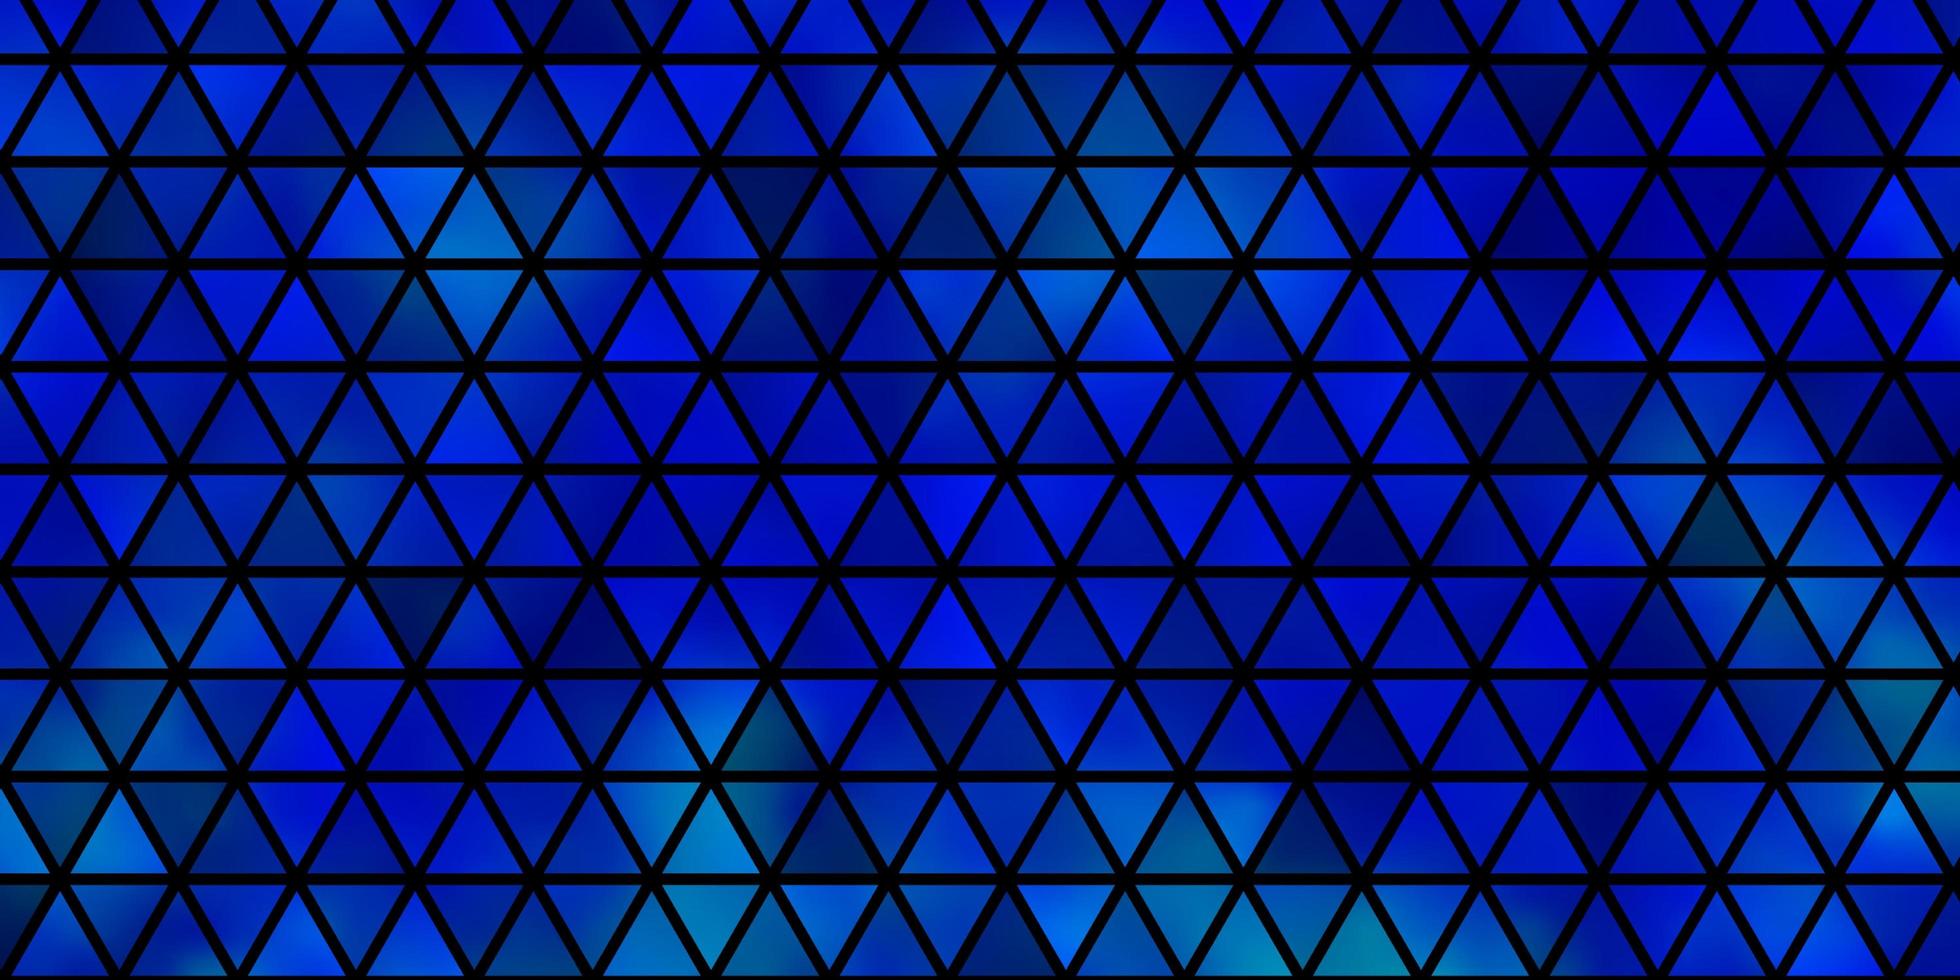 modelo de vetor azul claro com triângulos de cristais